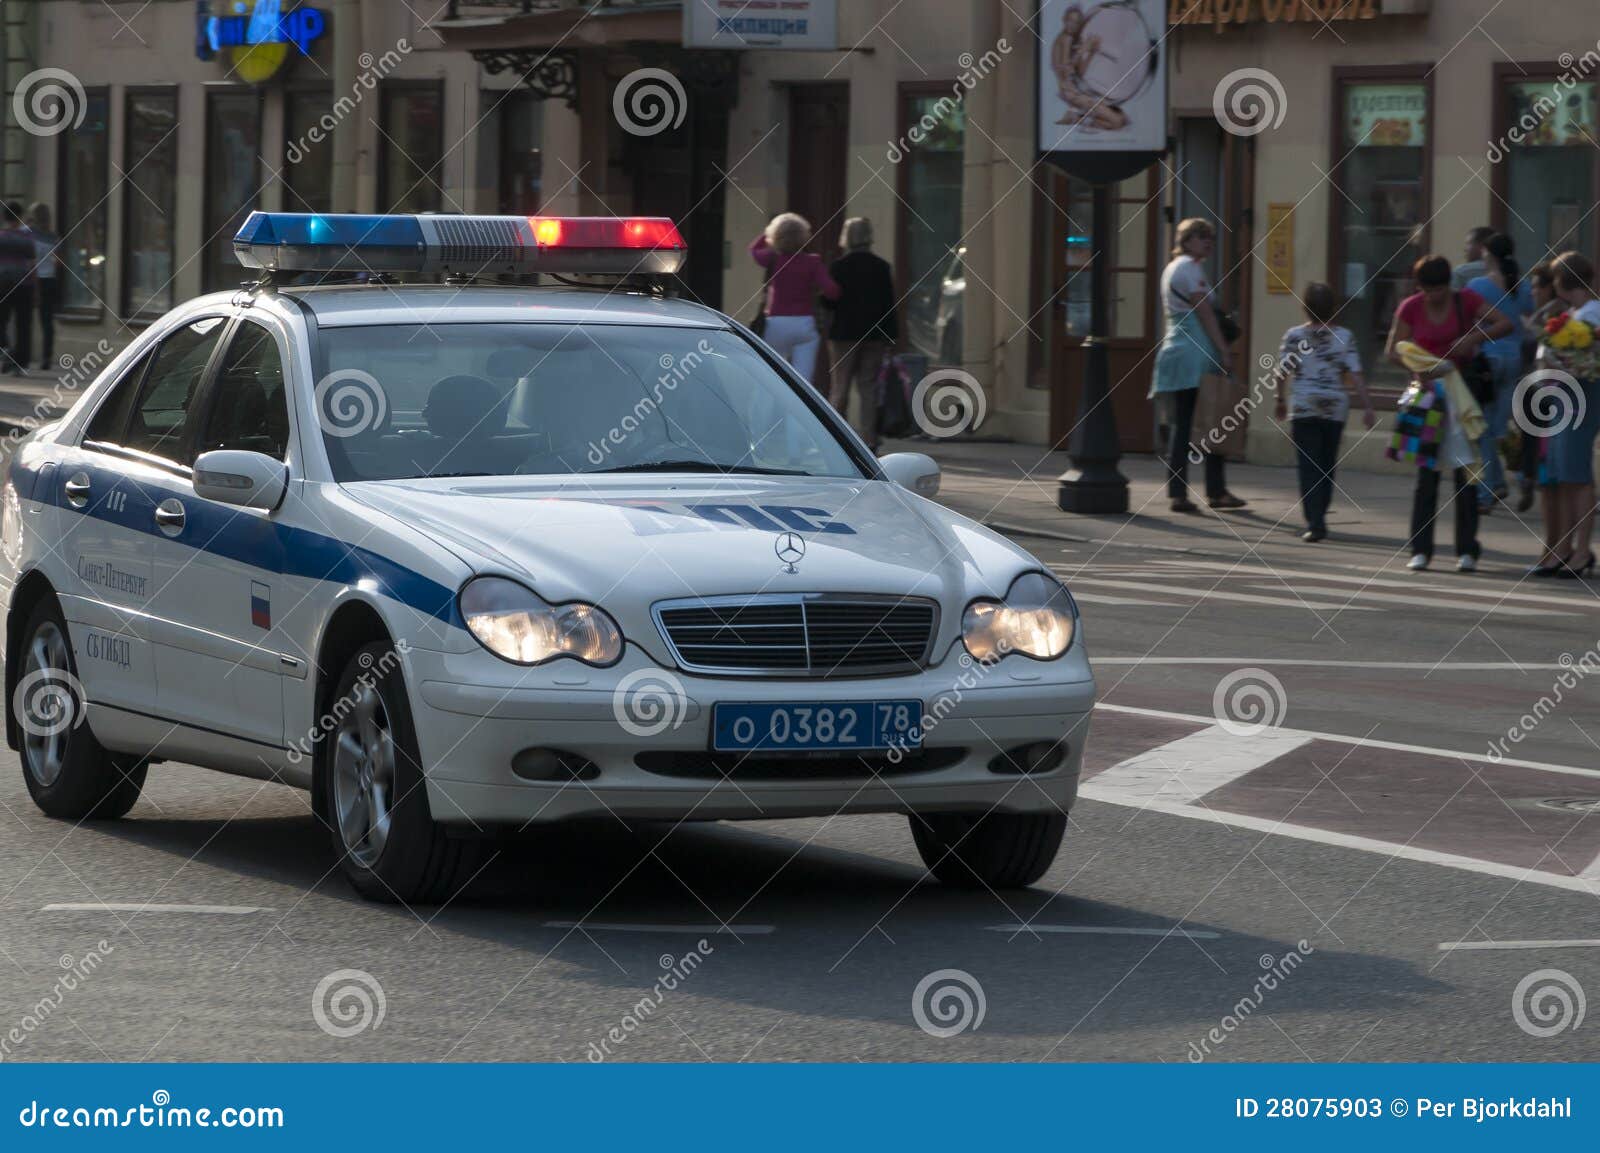 Гуф иномарка с мигалками поворачивает в арку. Полиция машина мигалки. Полицейская машинка с мигалками. Изображение полицейской машины с мигалкой. Полицейская машина с синими мигалками.